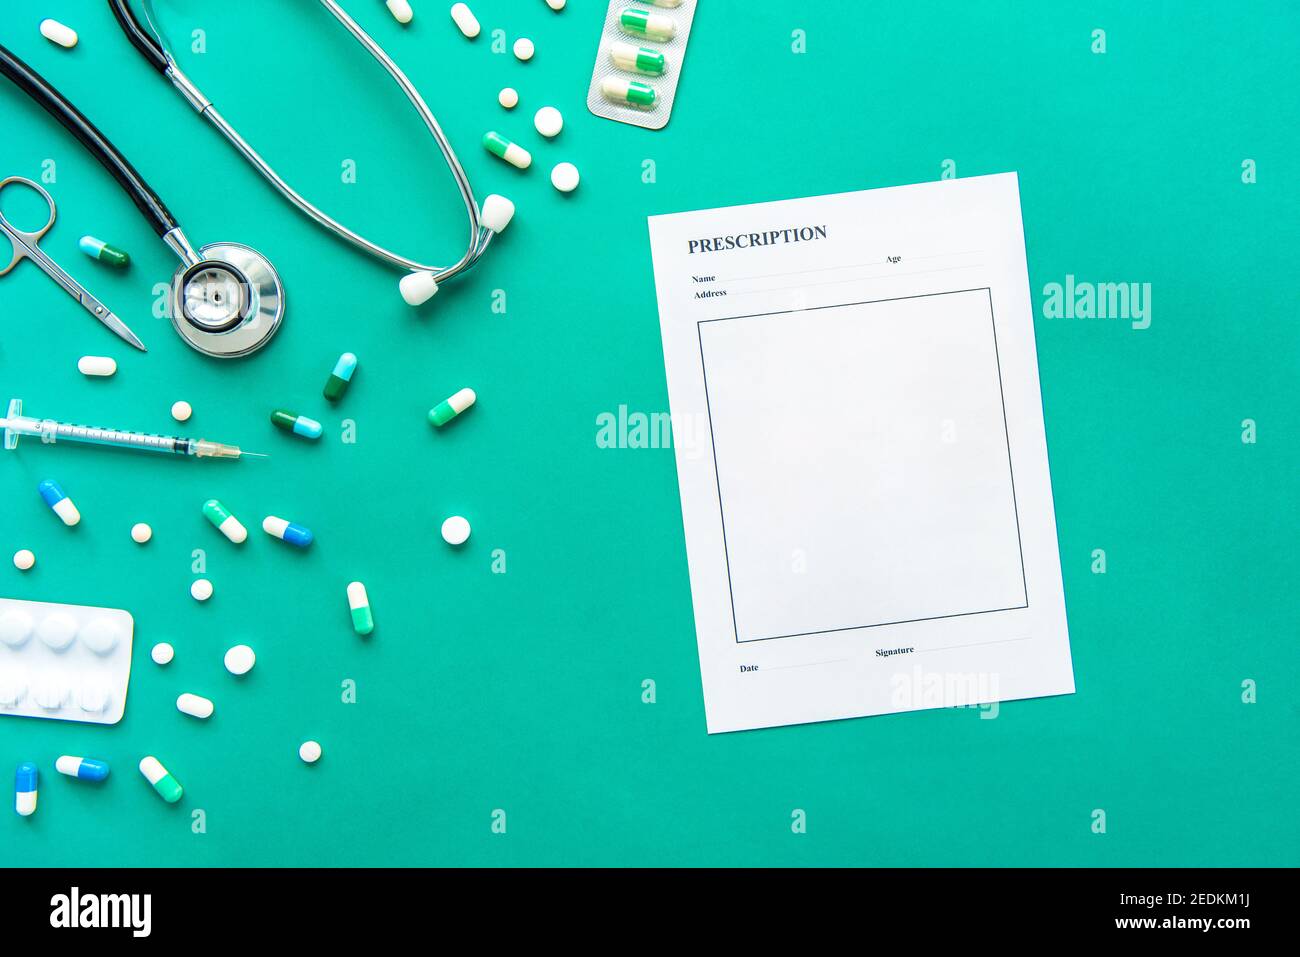 Medikamente und medizinische Instrumente wie Stethoskop, Spritze, Schere und leeres Rezepturpapier auf grünem Hintergrund Stockfoto